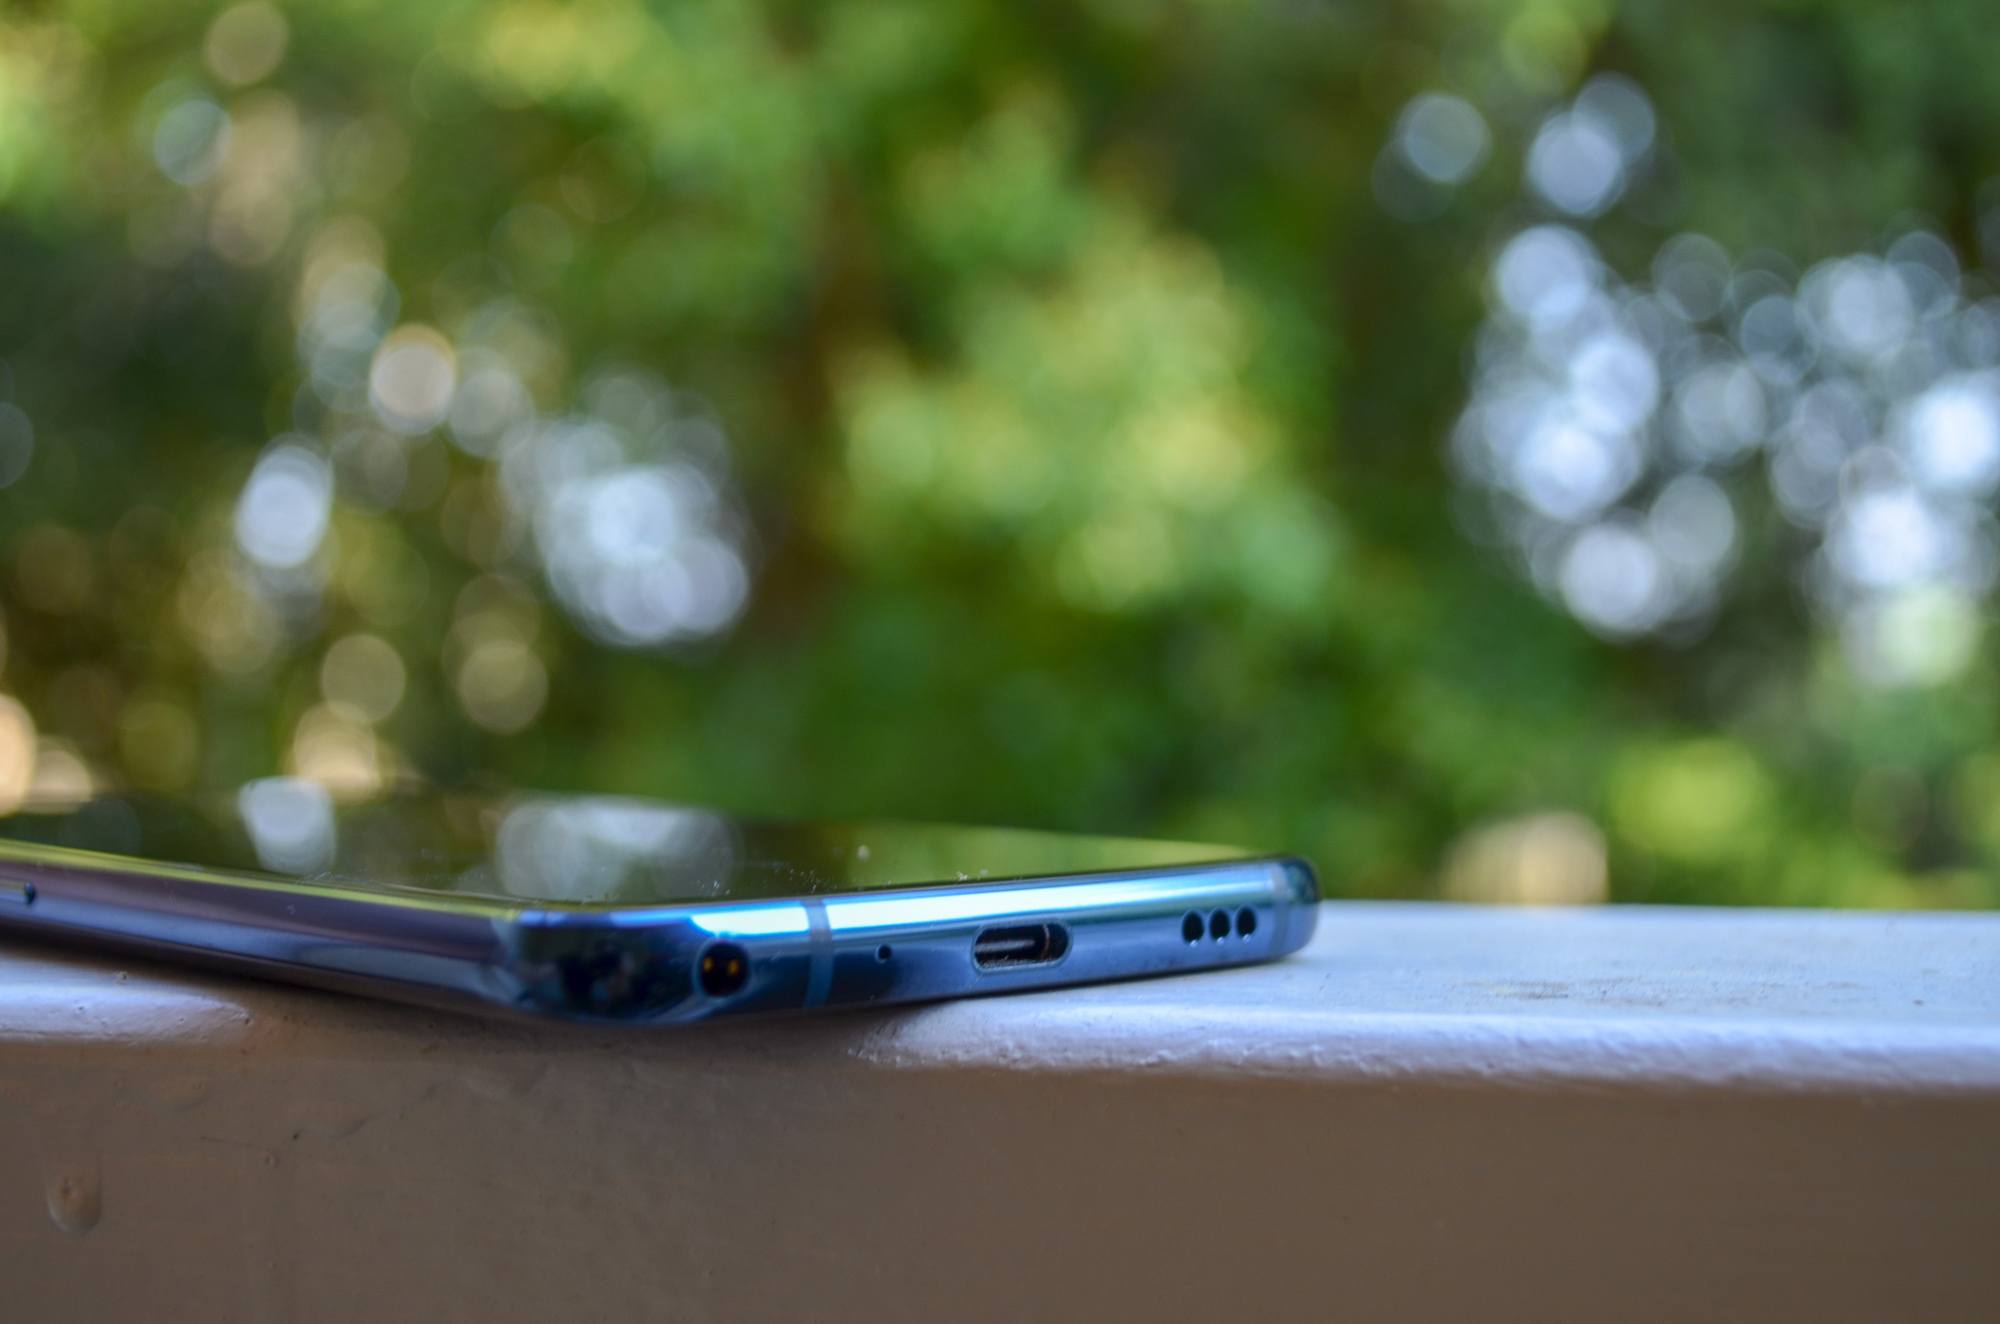 LG DSC 0408 Test – LG G7 ThinQ : Sur la pente de la réussite mais toujours pas Leader Android